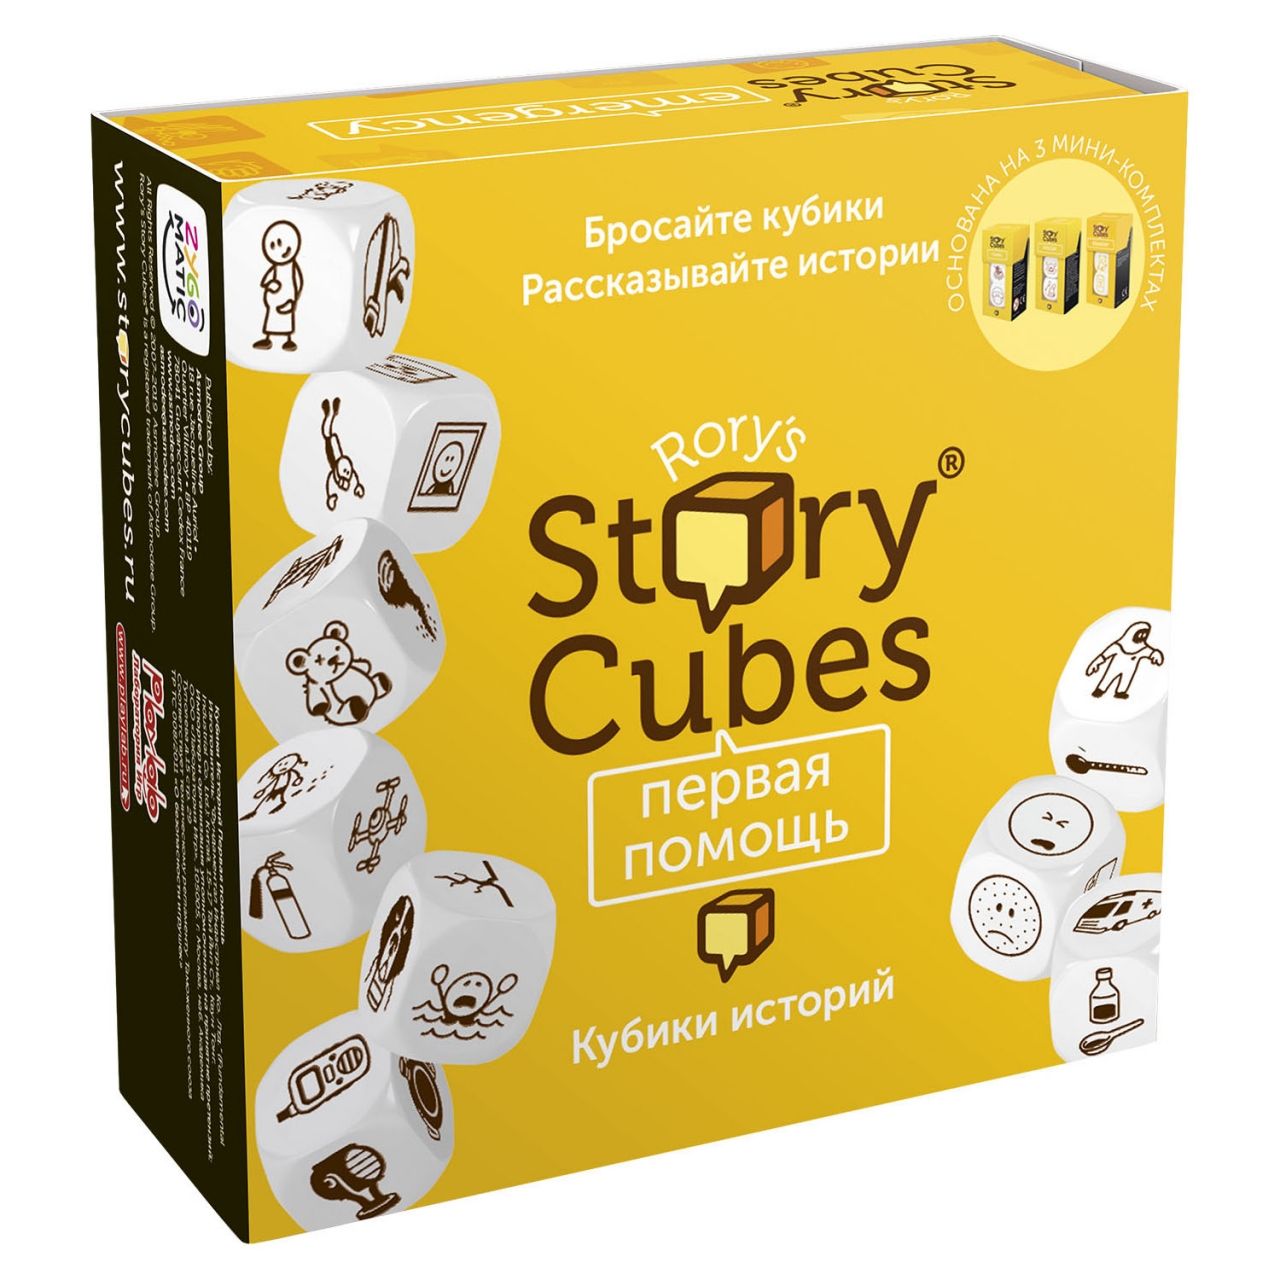 Настольная игра RORYS STORY CUBES RSC32 кубики историй Первая помощь настольная игра rubiks кубики историй герои